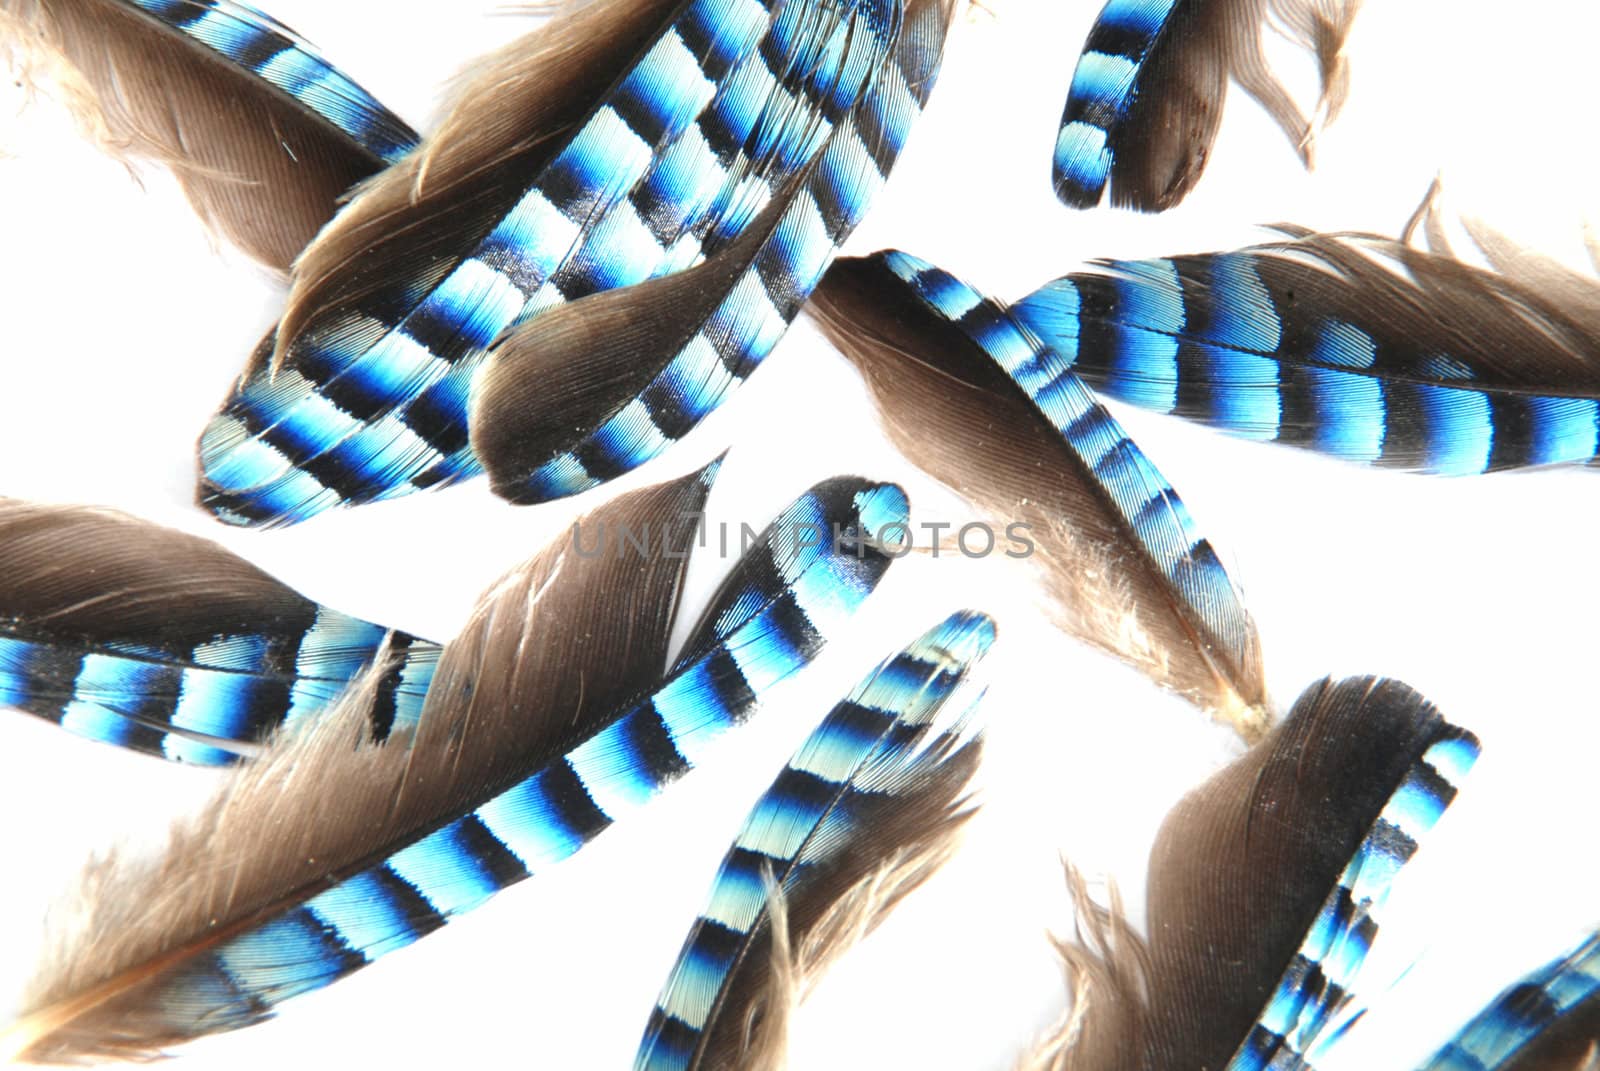 Jay feathers by drakodav